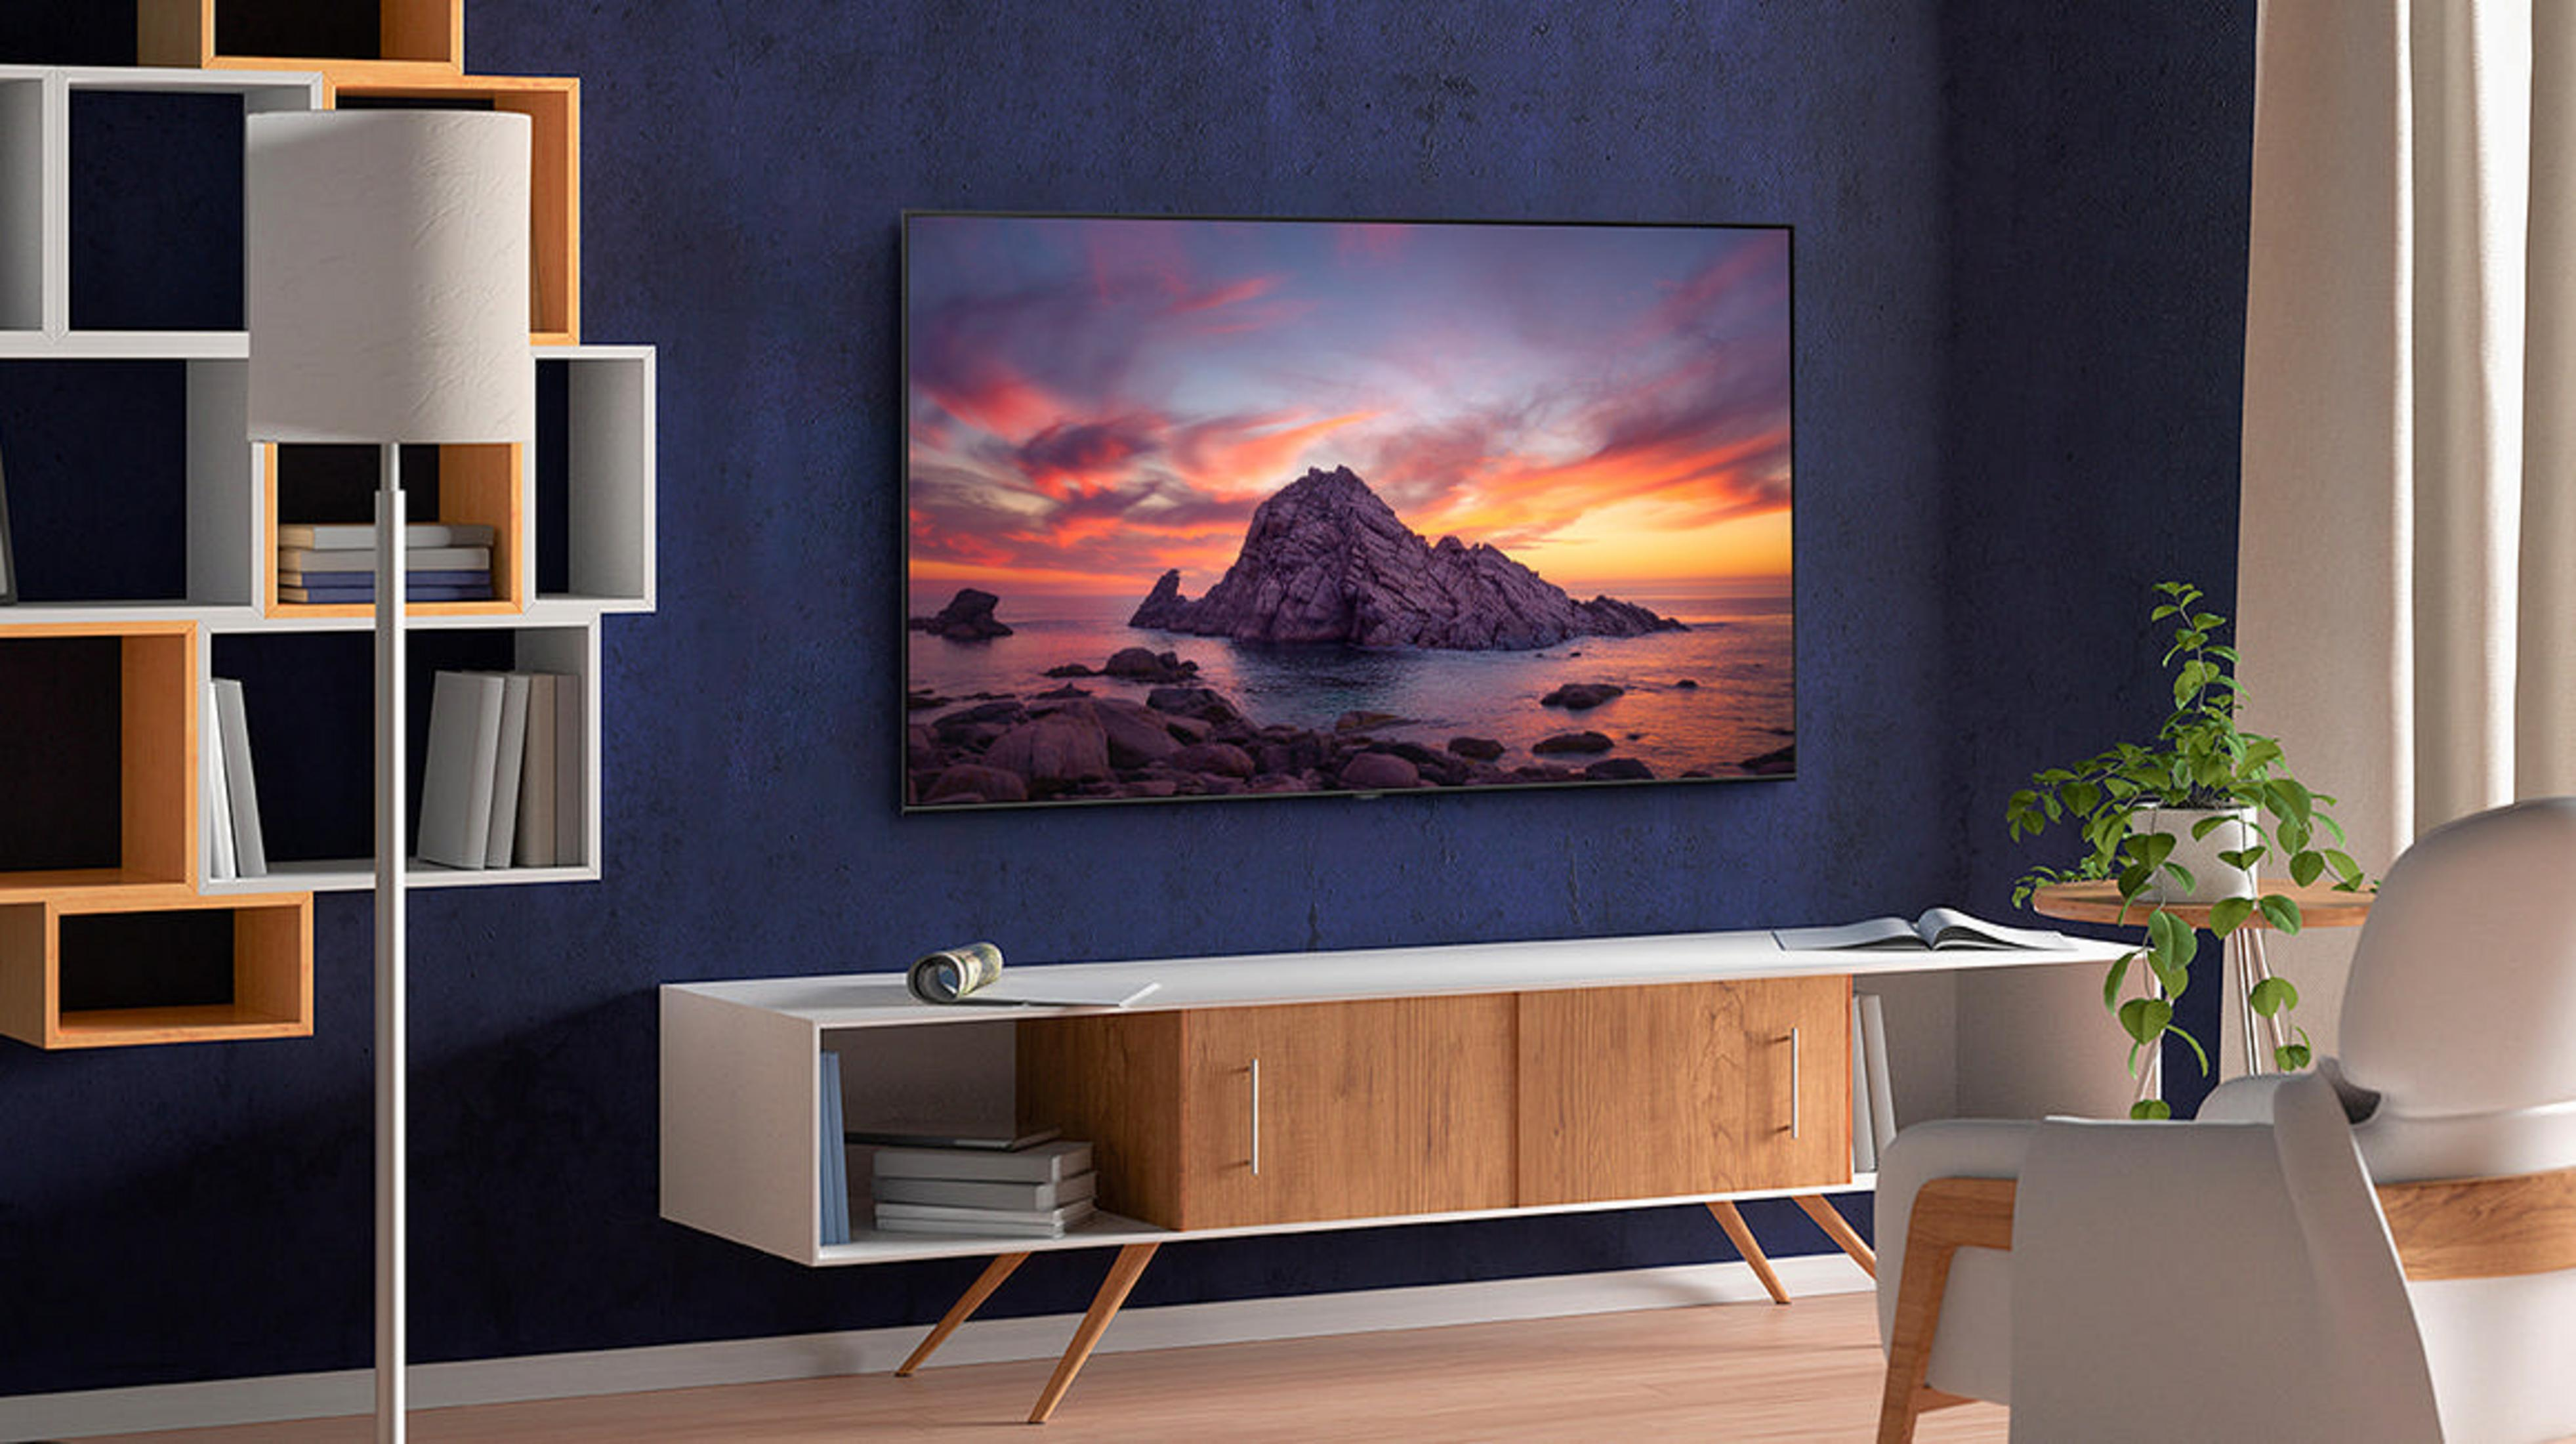 TV SMART Zoll 4K, cm, 60 GQ 138 TGUXZG / 55 SAMSUNG (Flat, 55 QLED Q TV) UHD